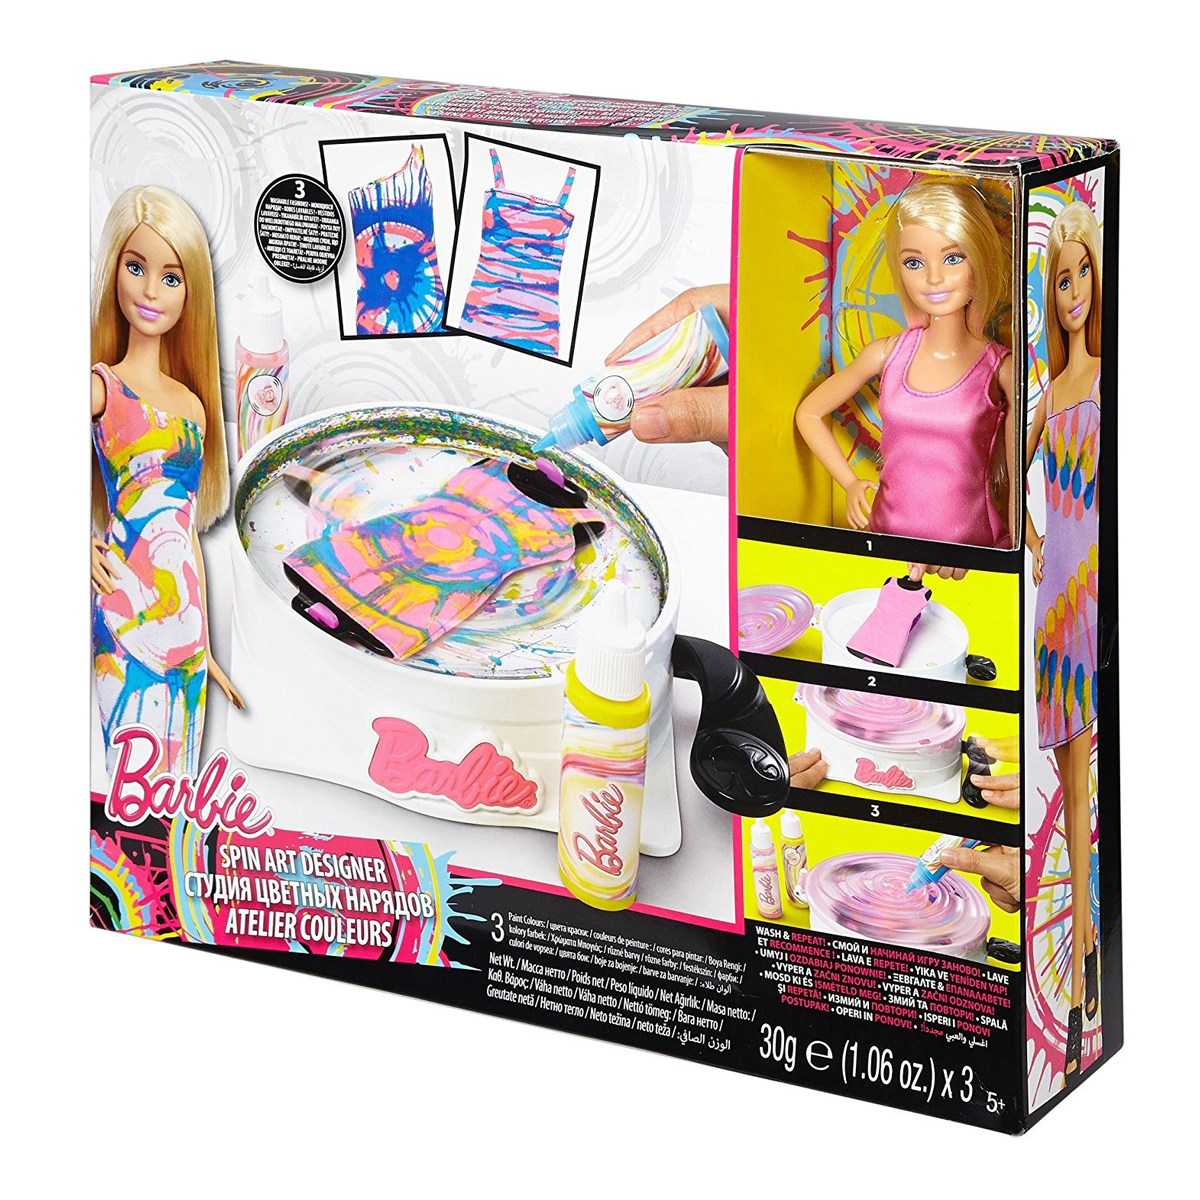 Barbie Spin Art Designer